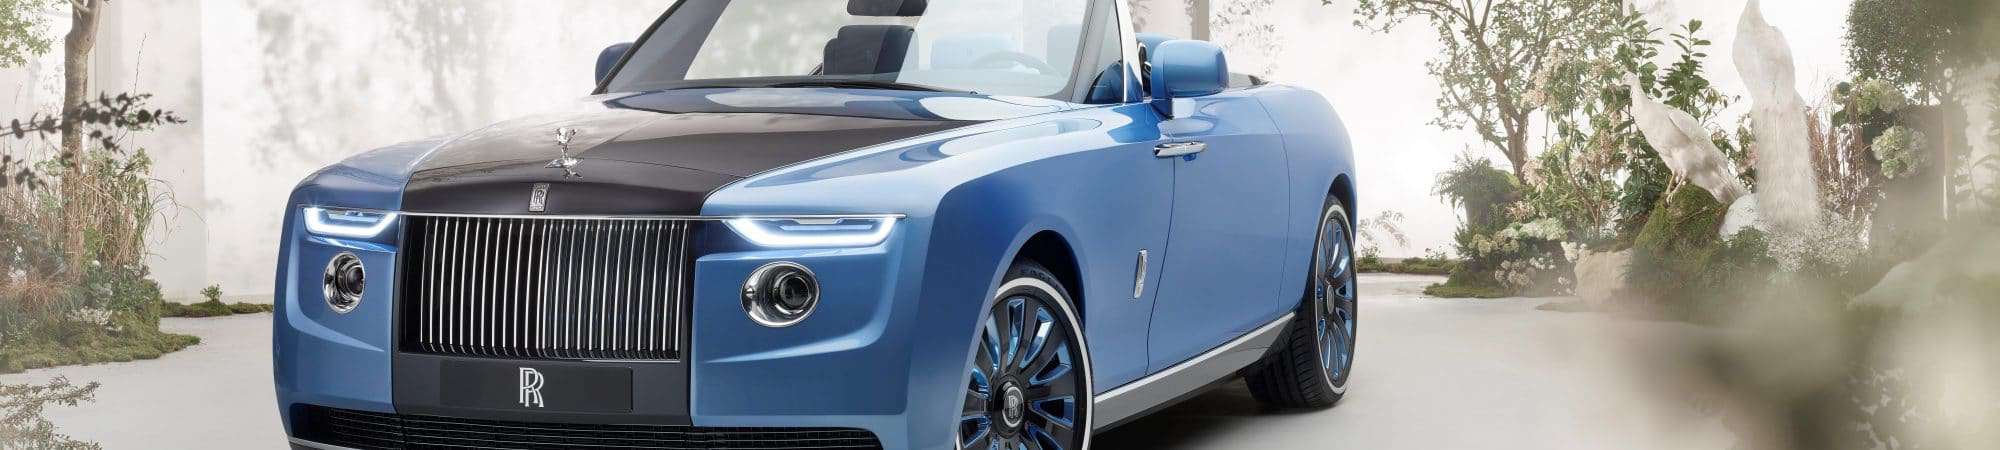 Carro mais caro do mundo, Rolls-Royce Boat Tail é praticamente um iate sobre rodas. Imagem: Divulgação